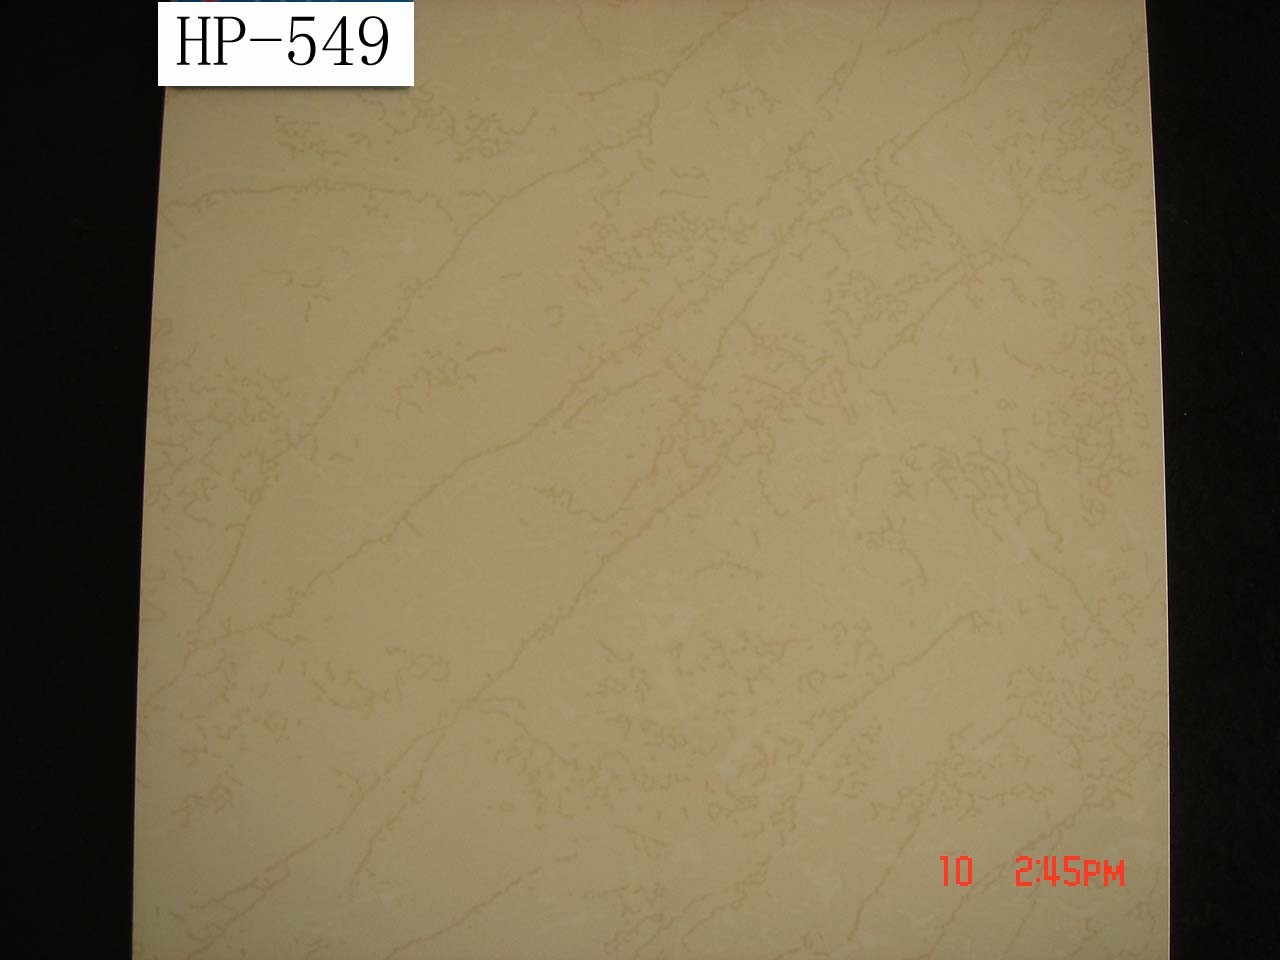 High quality soluble salt tiles HP-549